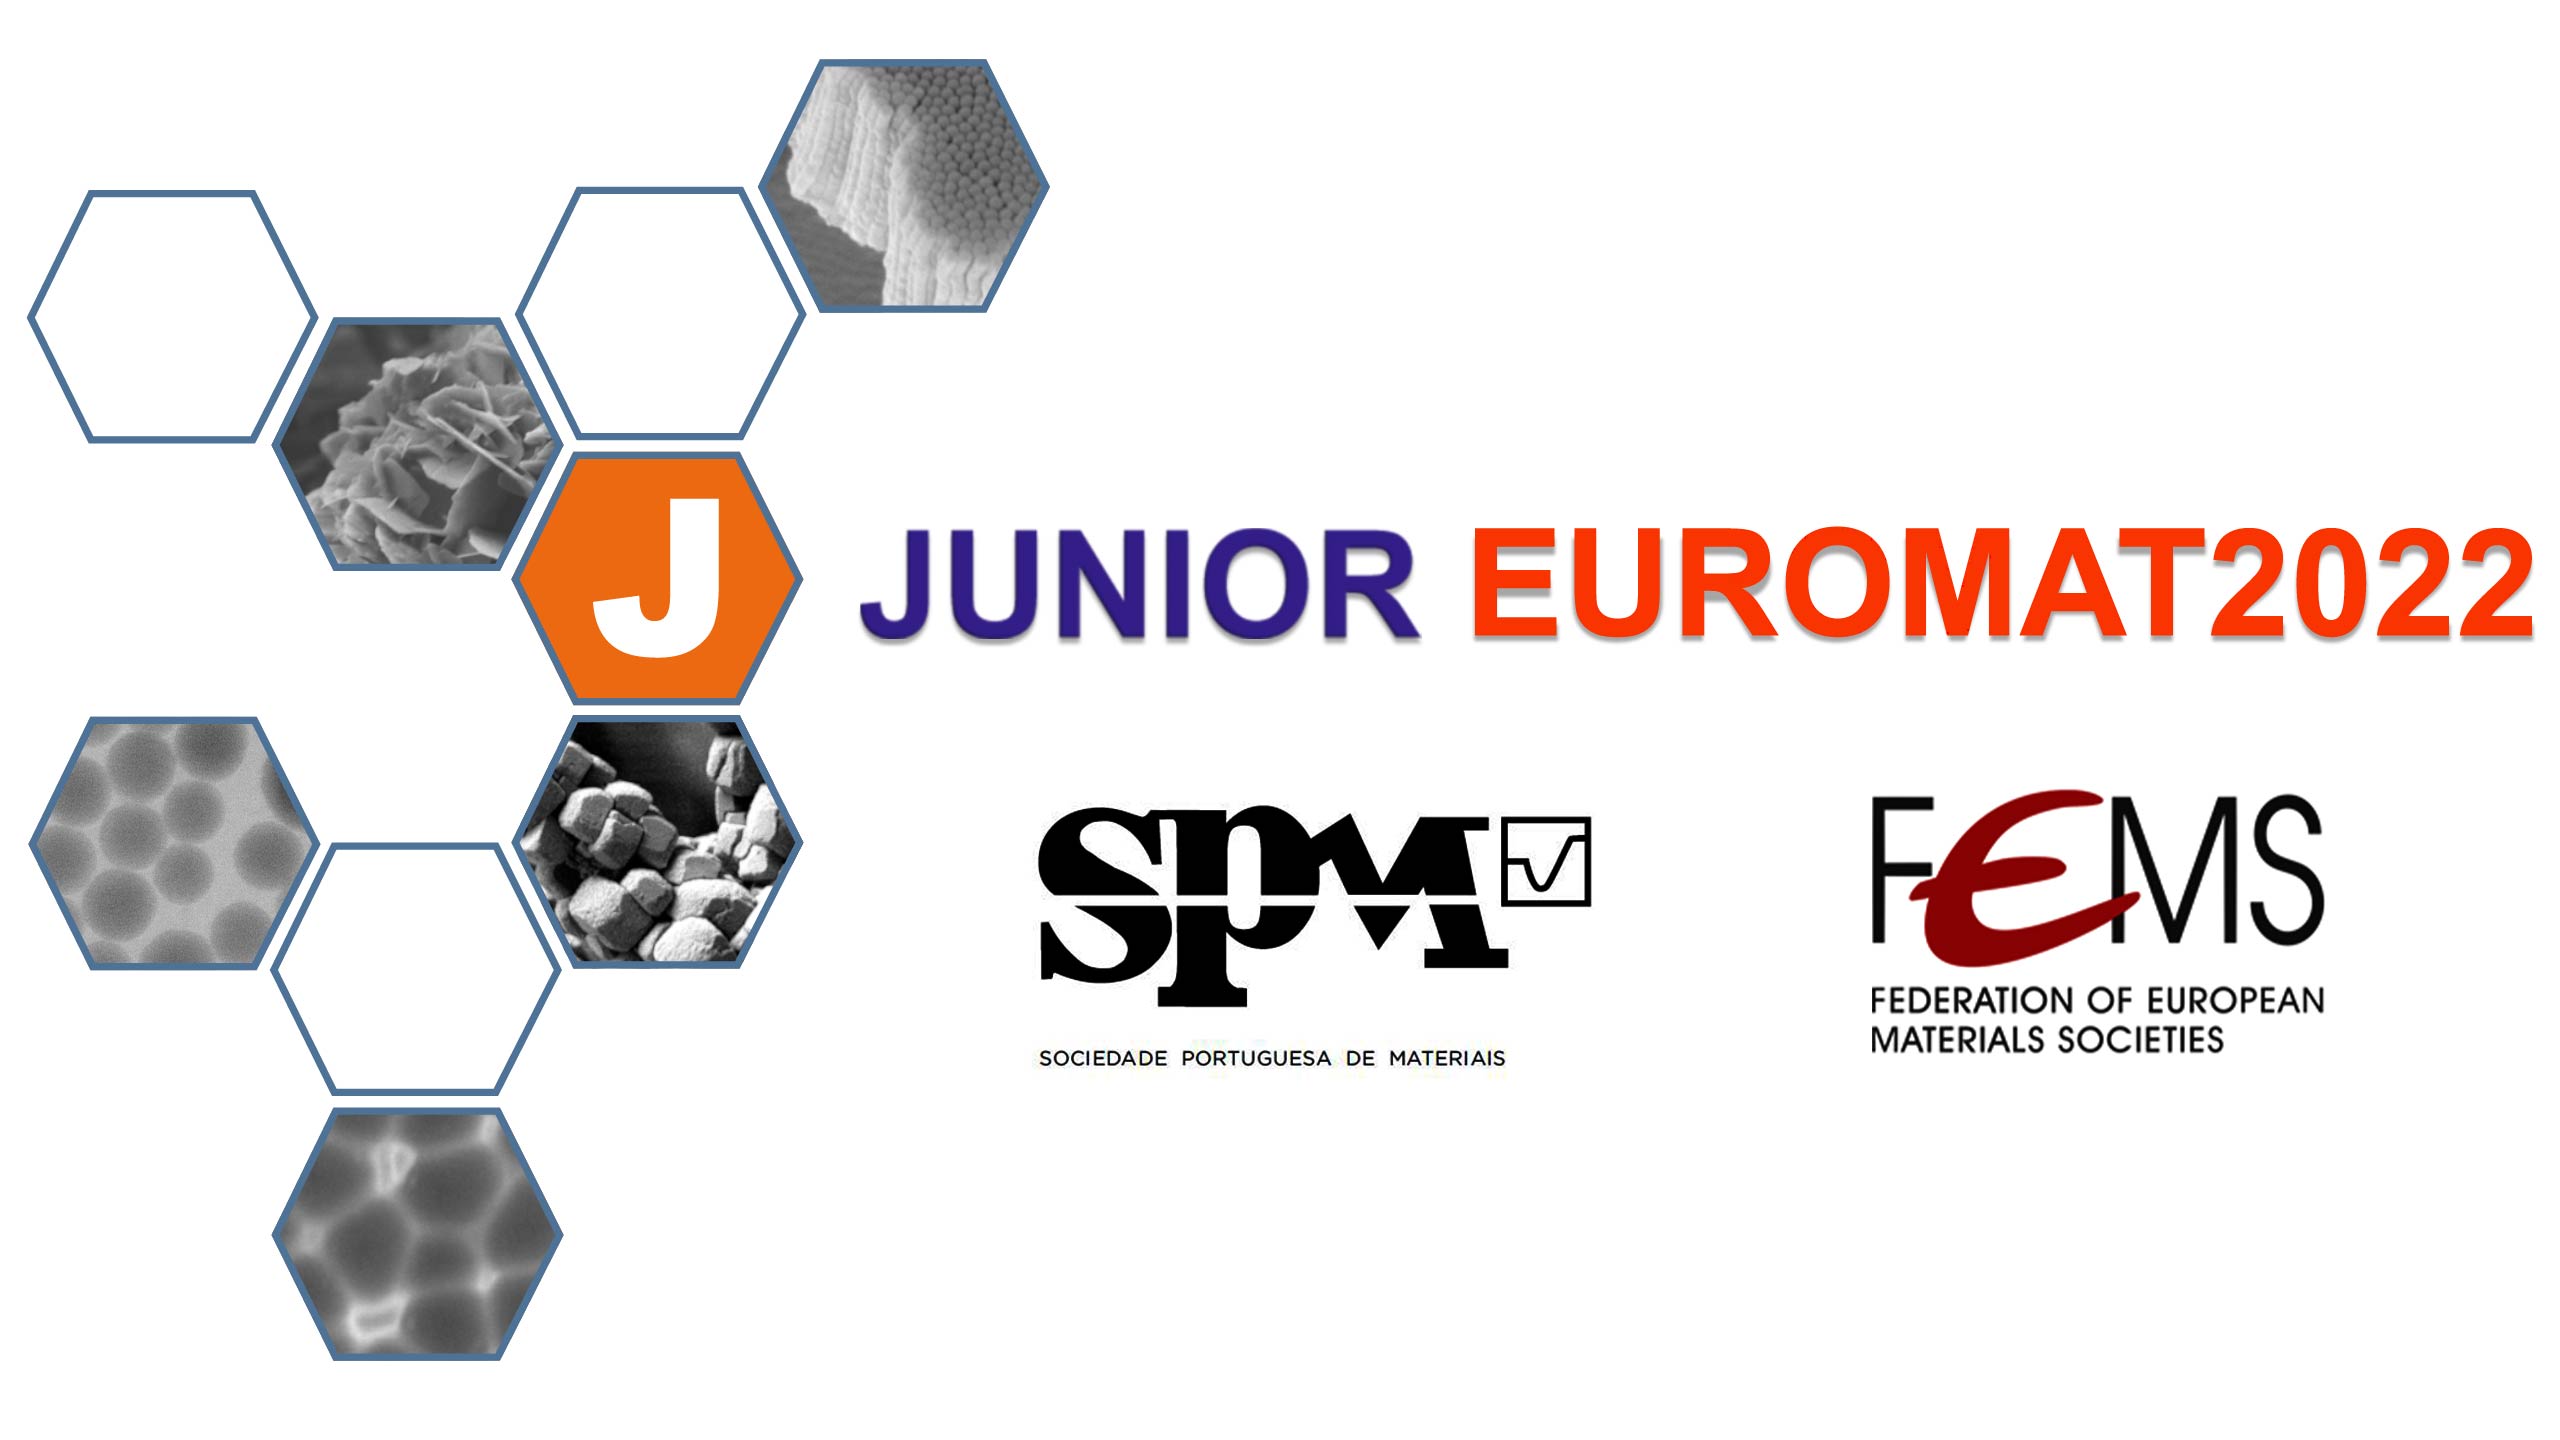 Junior Euromat 2022